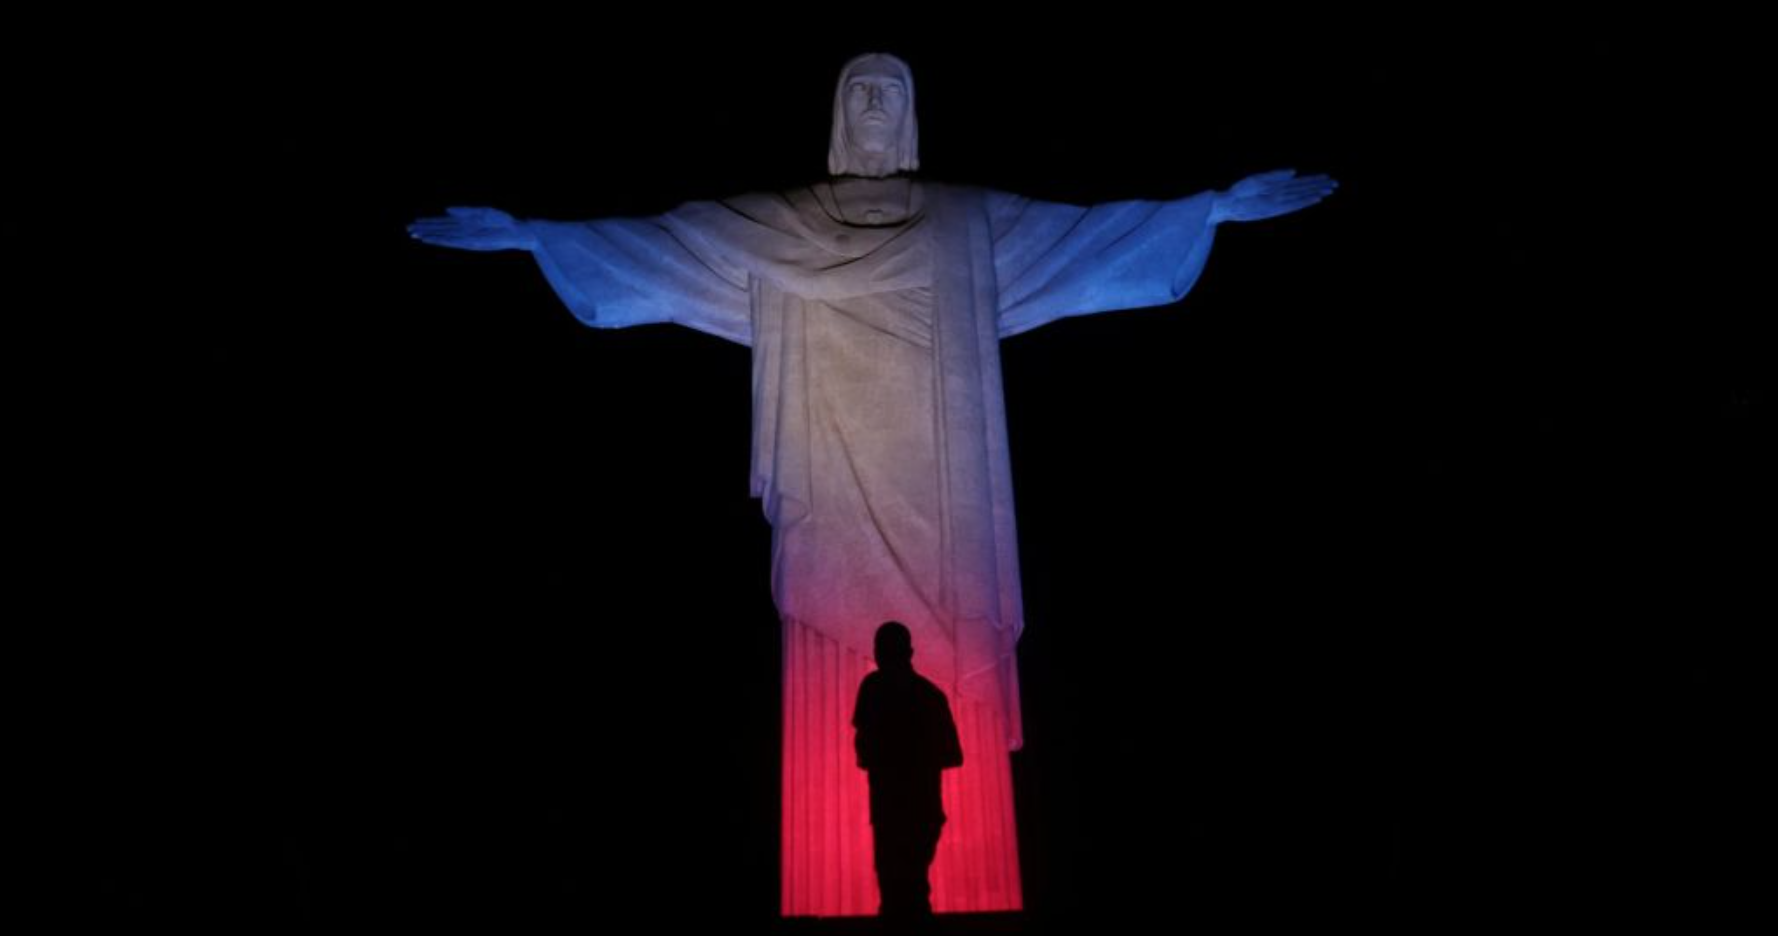 Tượng Chúa Cứu Thế ở thành phố Rio de Janeiro, Brazil được chiếu sáng bởi 3 màu đèn tượng trưng trên cờ của Vương quốc Anh (Union Jack), sau khi chính phủ nước này ra sắc lệnh để tang Nữ hoàng Elizabeth II trong vòng 3 ngày.